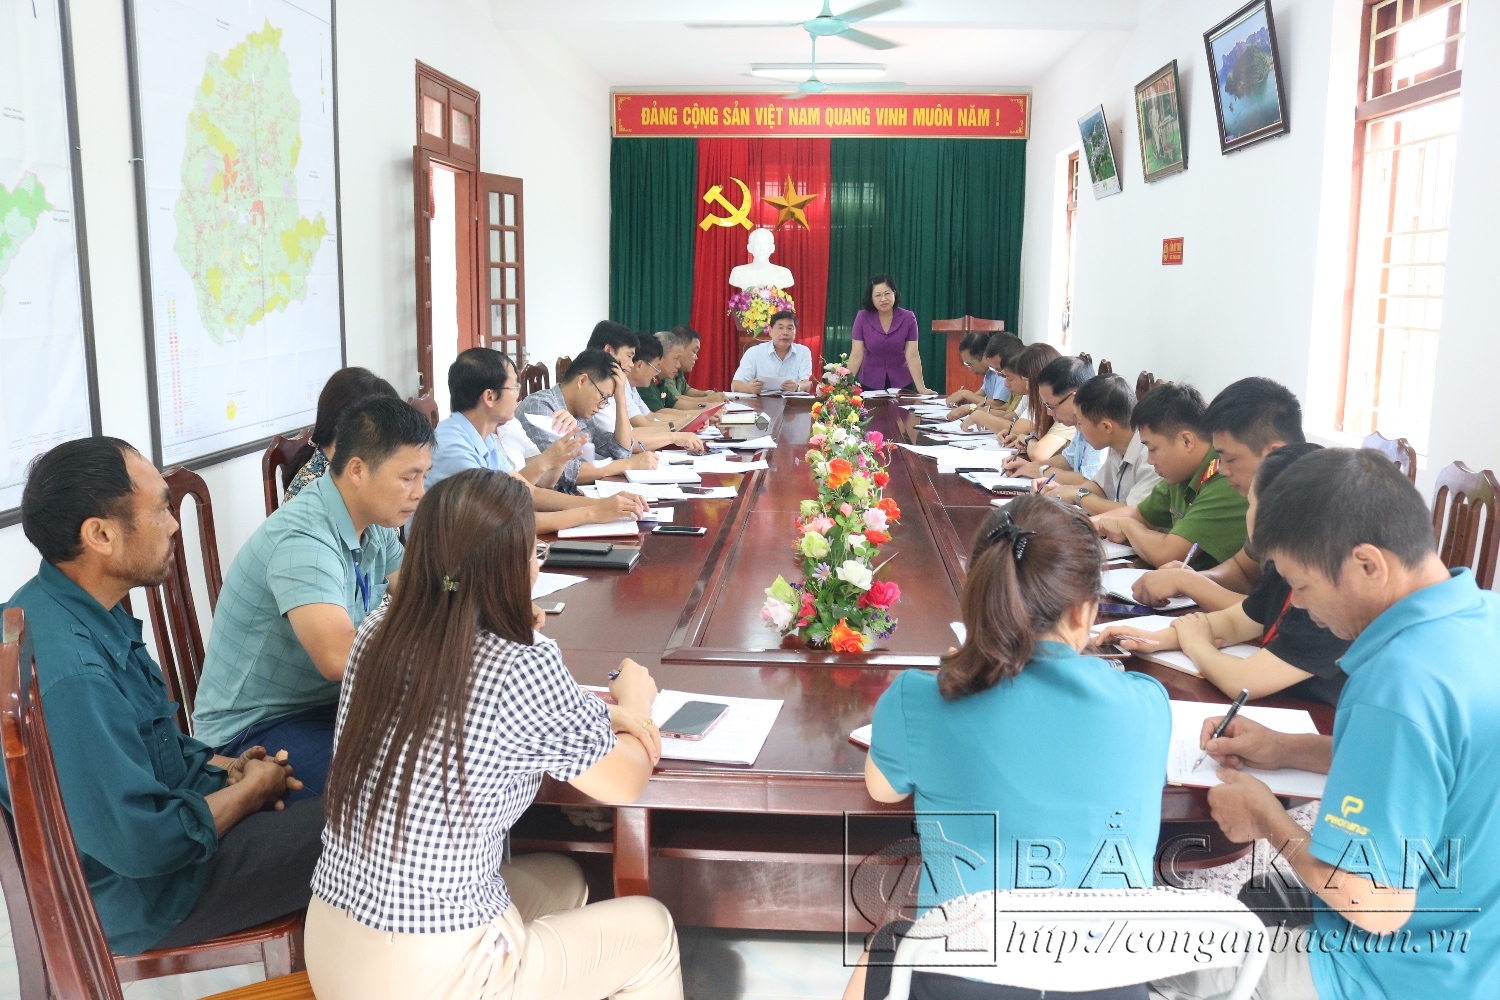 Đồng chí Phương Thị Thanh, Phó Bí thư thường trực tỉnh uỷ, Chủ tịch HĐND tỉnh kiểm tra công tác tín ngưỡng, tôn giáo tại thị trấn Nà Phặc.